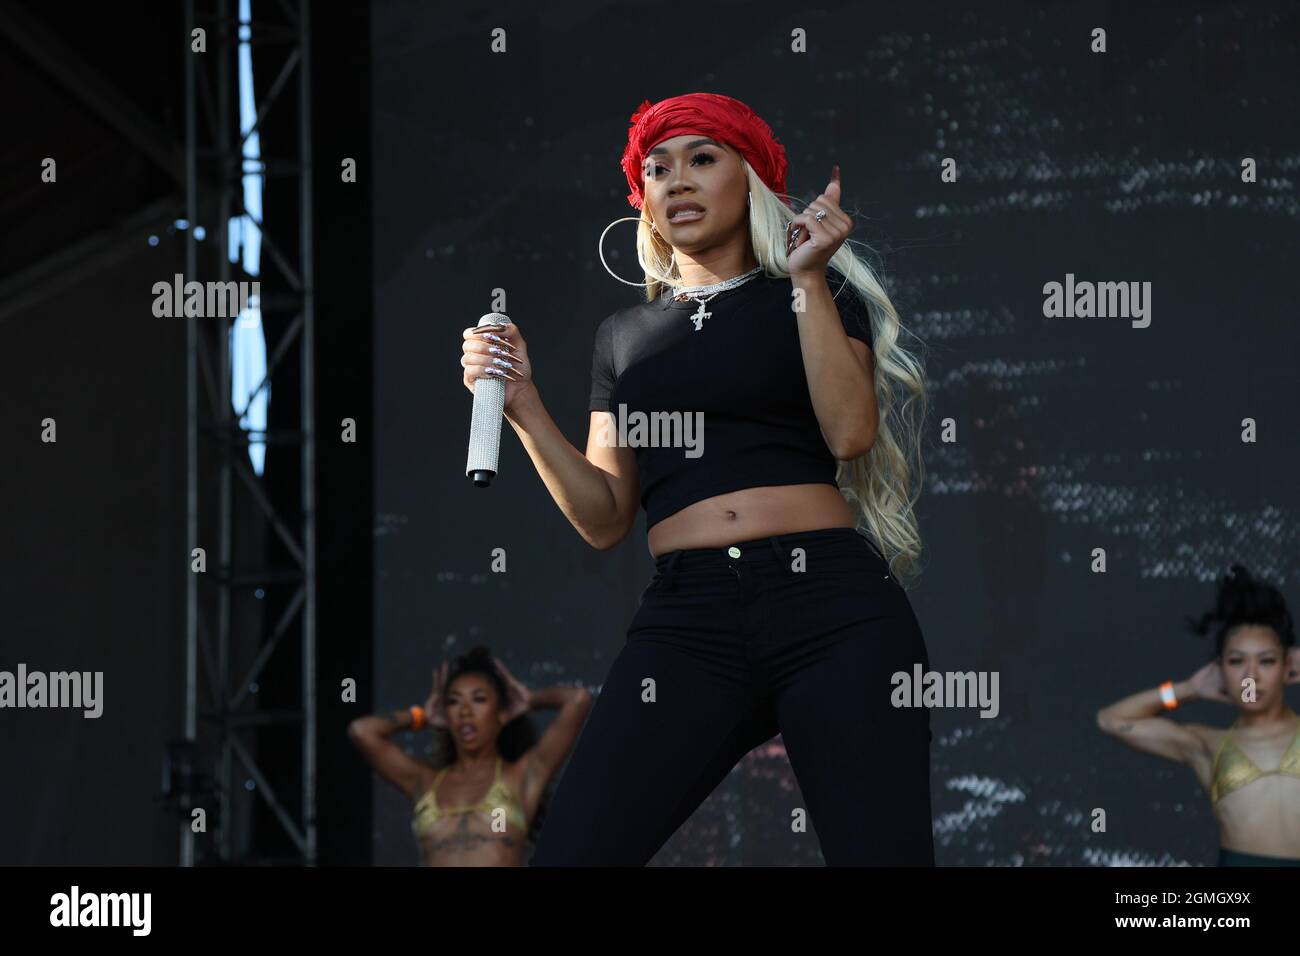 Las Vegas, Stati Uniti. 18 settembre 2021. L'artista hip-hop Saweetie si esibisce sul palco durante l'iHeartRadio Music Festival Daytime Concerts all'Area15 di Las Vegas, Nevada sabato 18 settembre 2021. Foto di James Atoa/UPI Credit: UPI/Alamy Live News Foto Stock